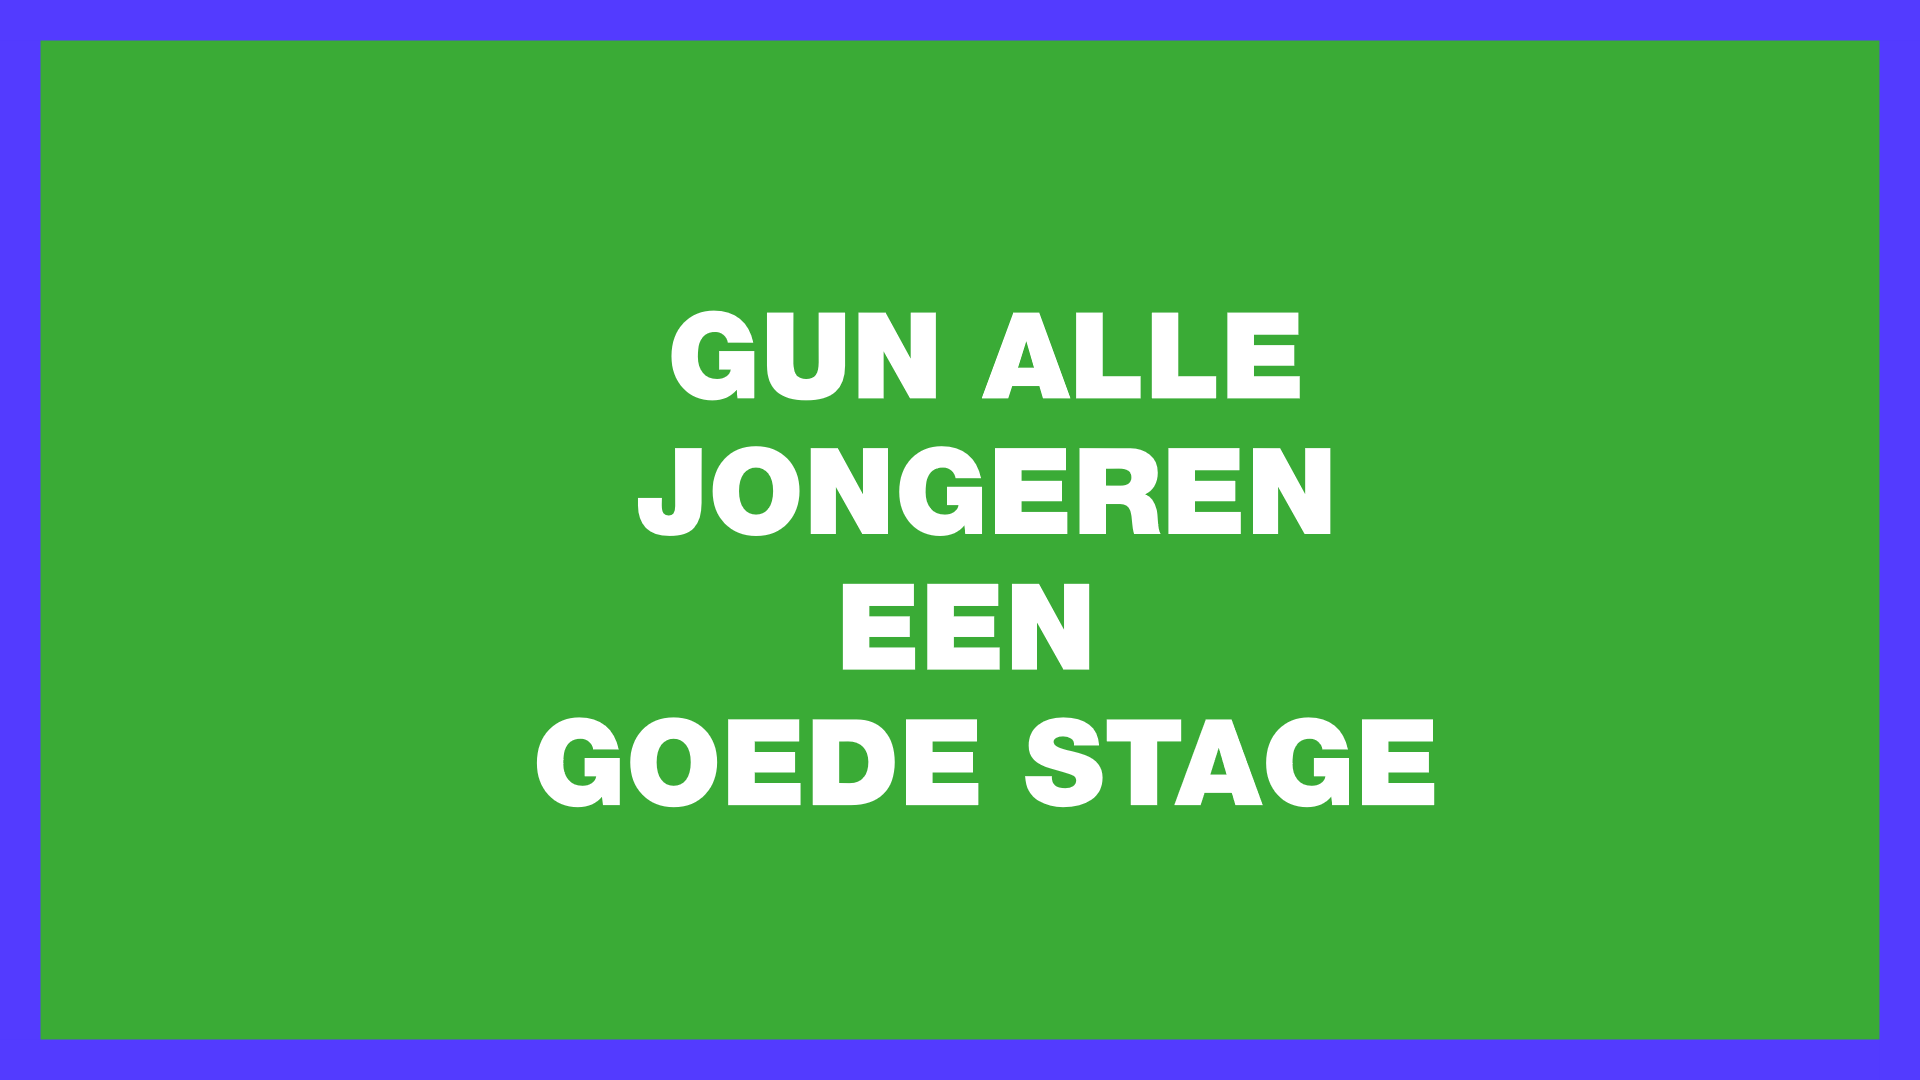 tekst 'Gun alle jongeren een goede stage' op groene achtergrond